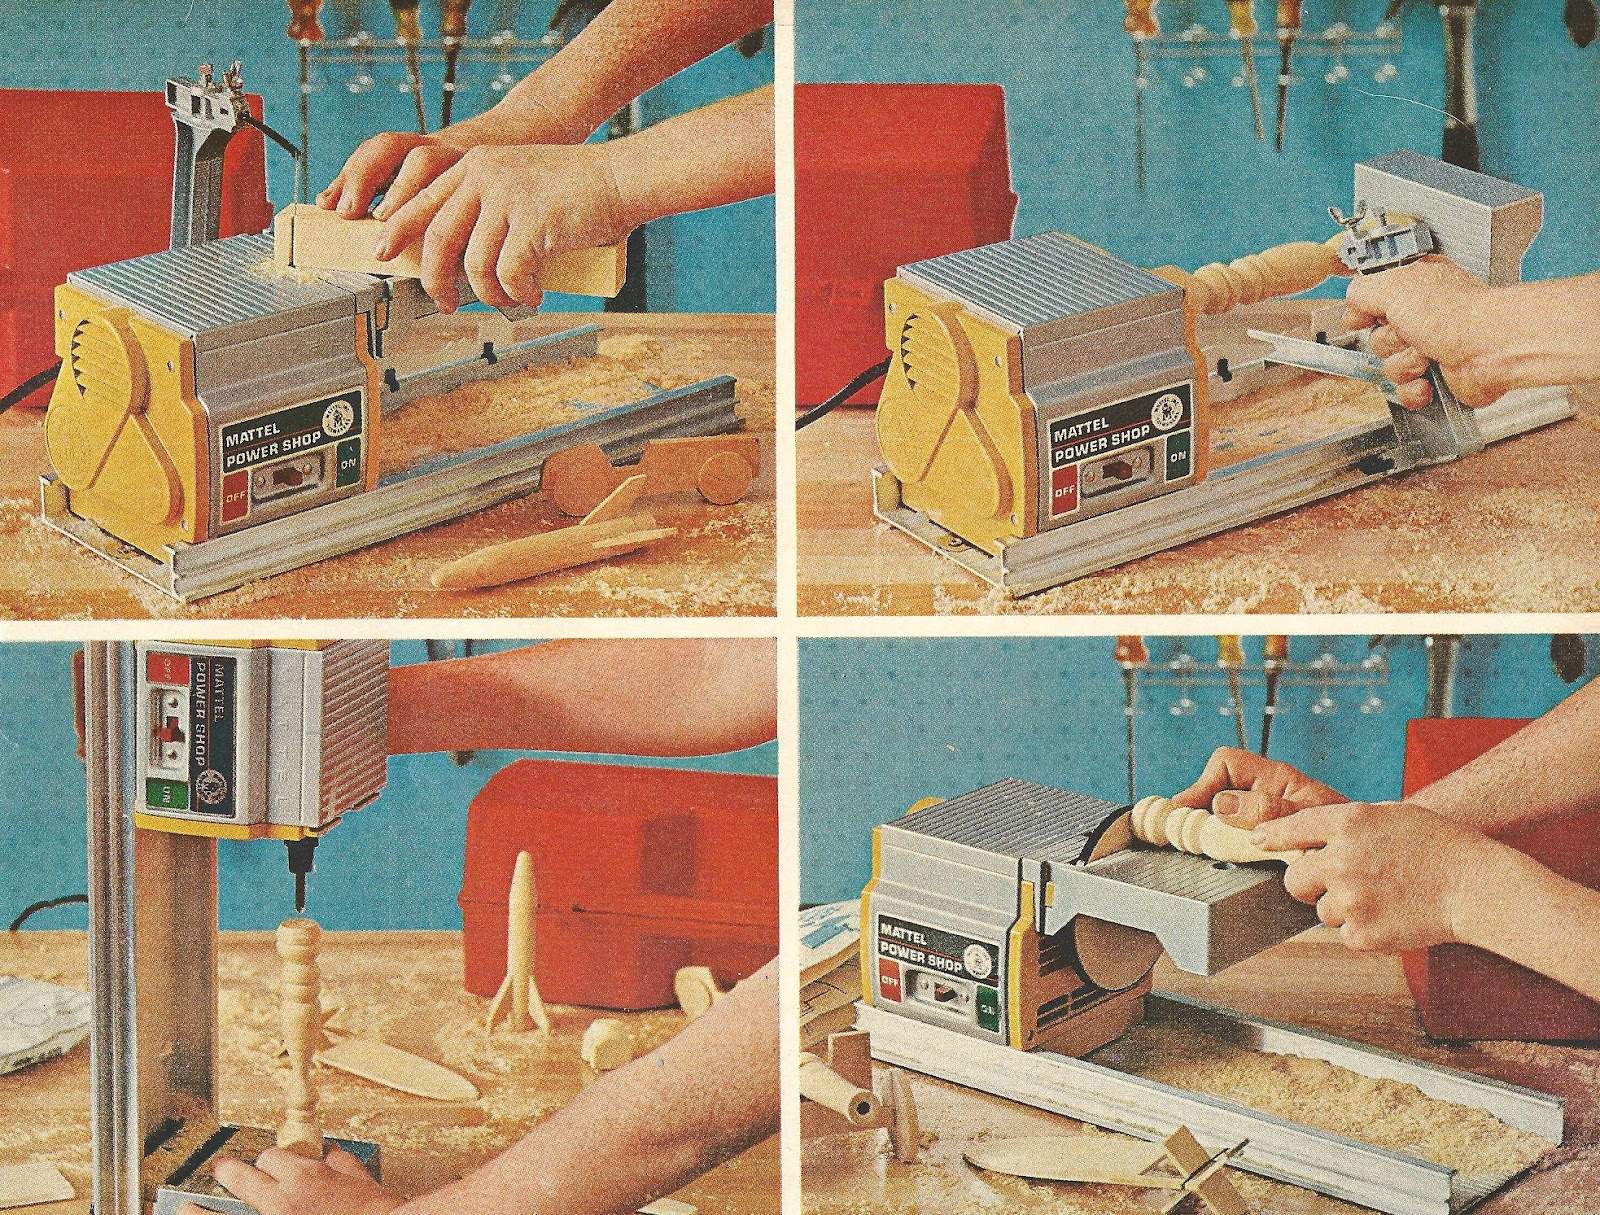 mattel+power+shop+toy+1965.